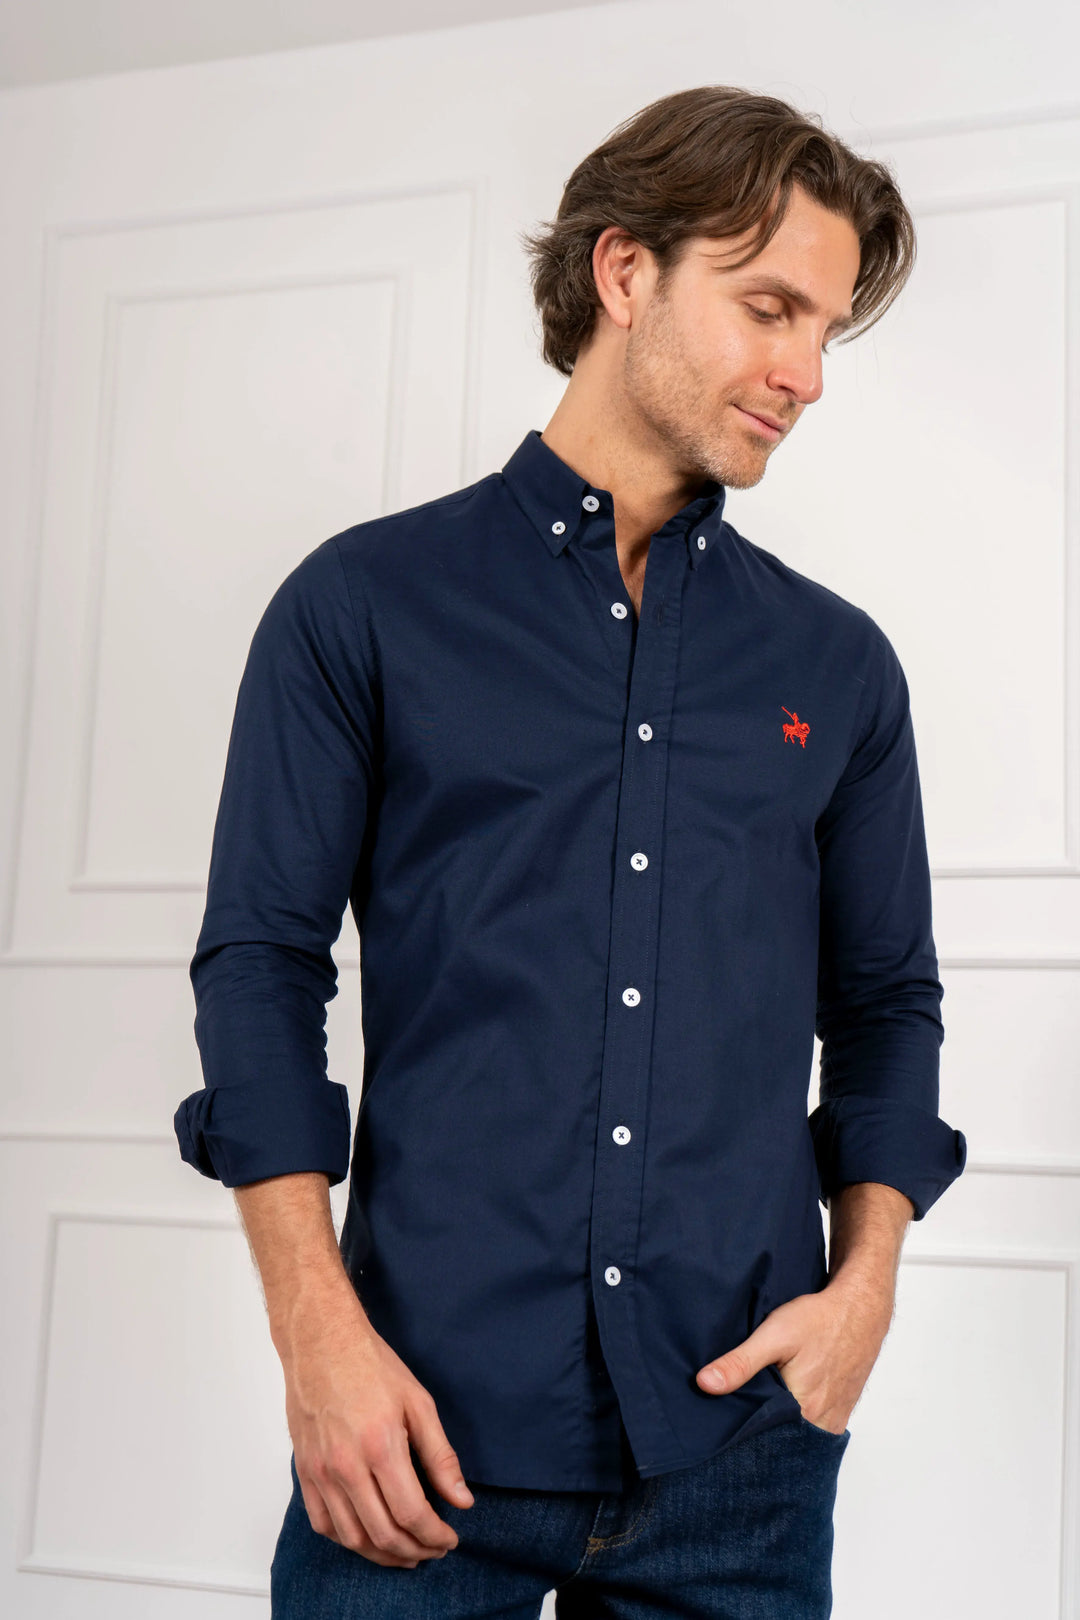 Camisa hombre azul oscuro tipo oxford, logo bordado rojo. Material 100% algodón